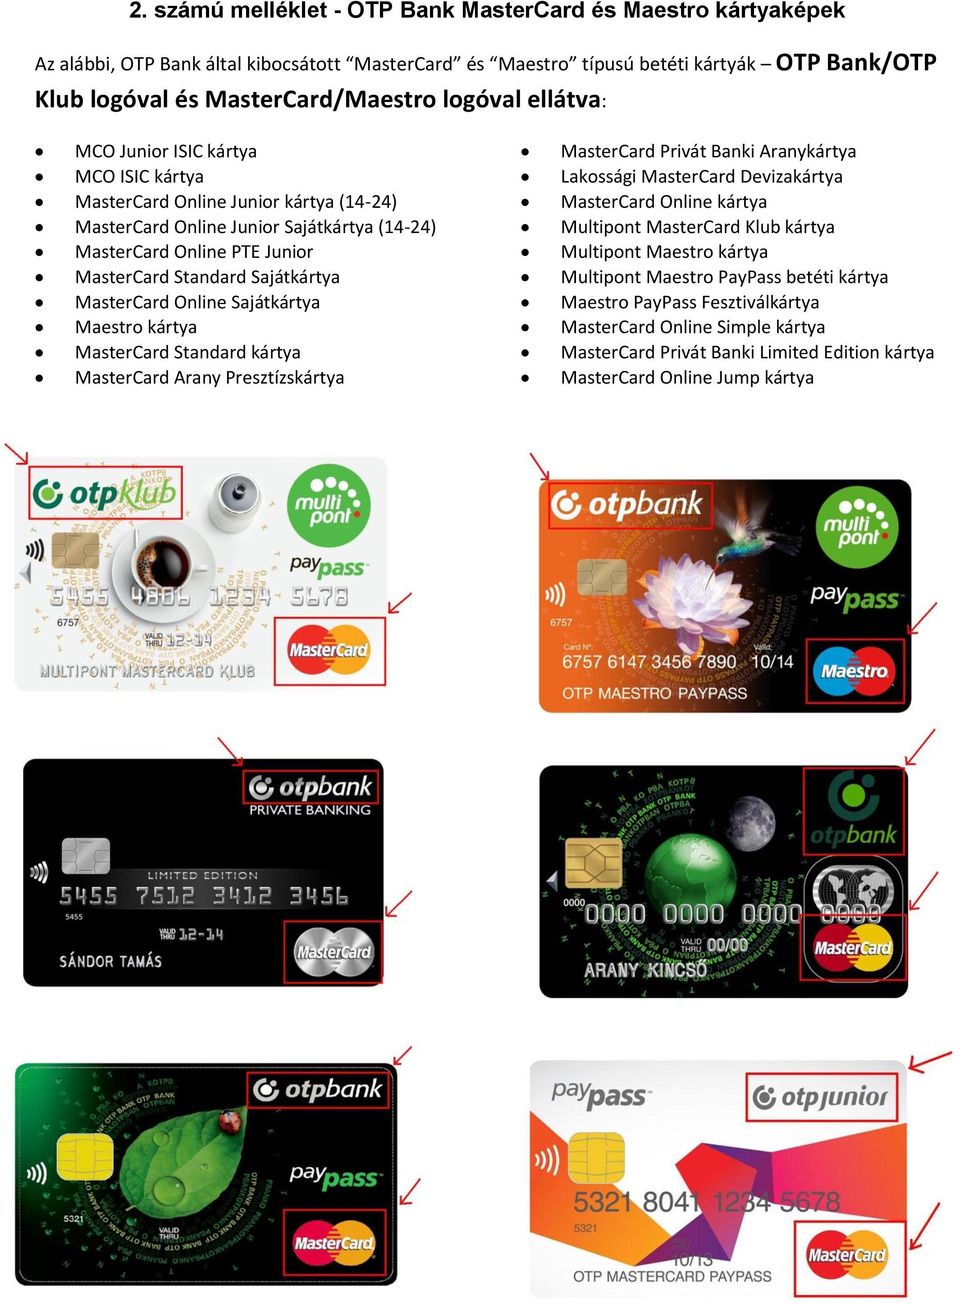 Sajátkártya MasterCard Online Sajátkártya Maestro kártya MasterCard Standard kártya MasterCard Arany Presztízskártya MasterCard Privát Banki Aranykártya Lakossági MasterCard Devizakártya MasterCard